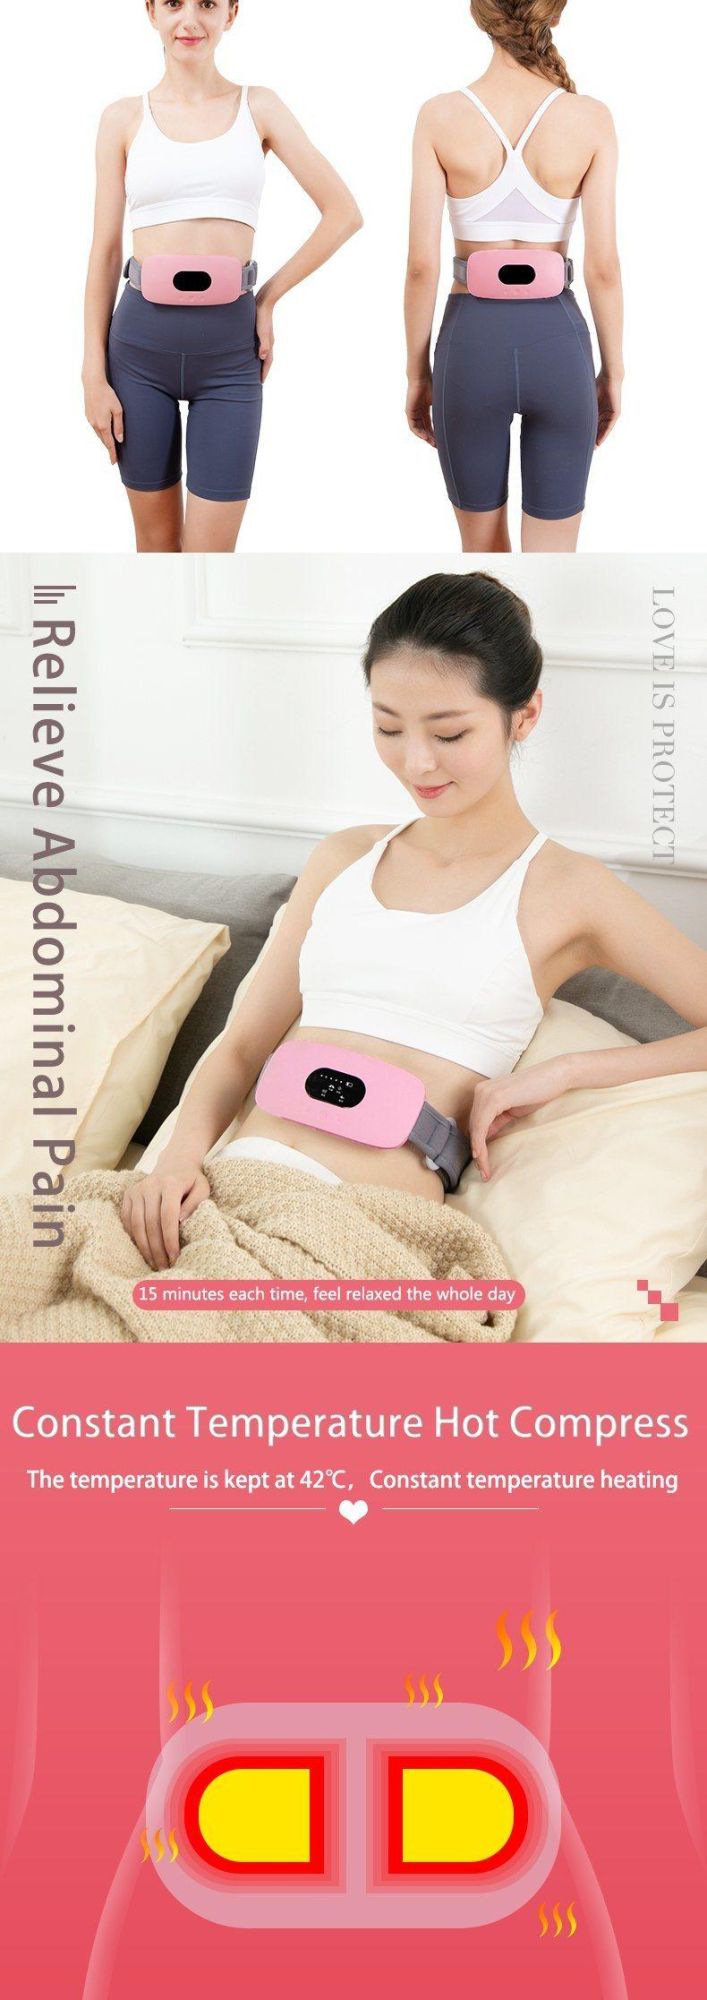 Hezheng Abdomen Vibration Shiatsu Massage Machine and Heat Body Shape Slimming Belt Massager